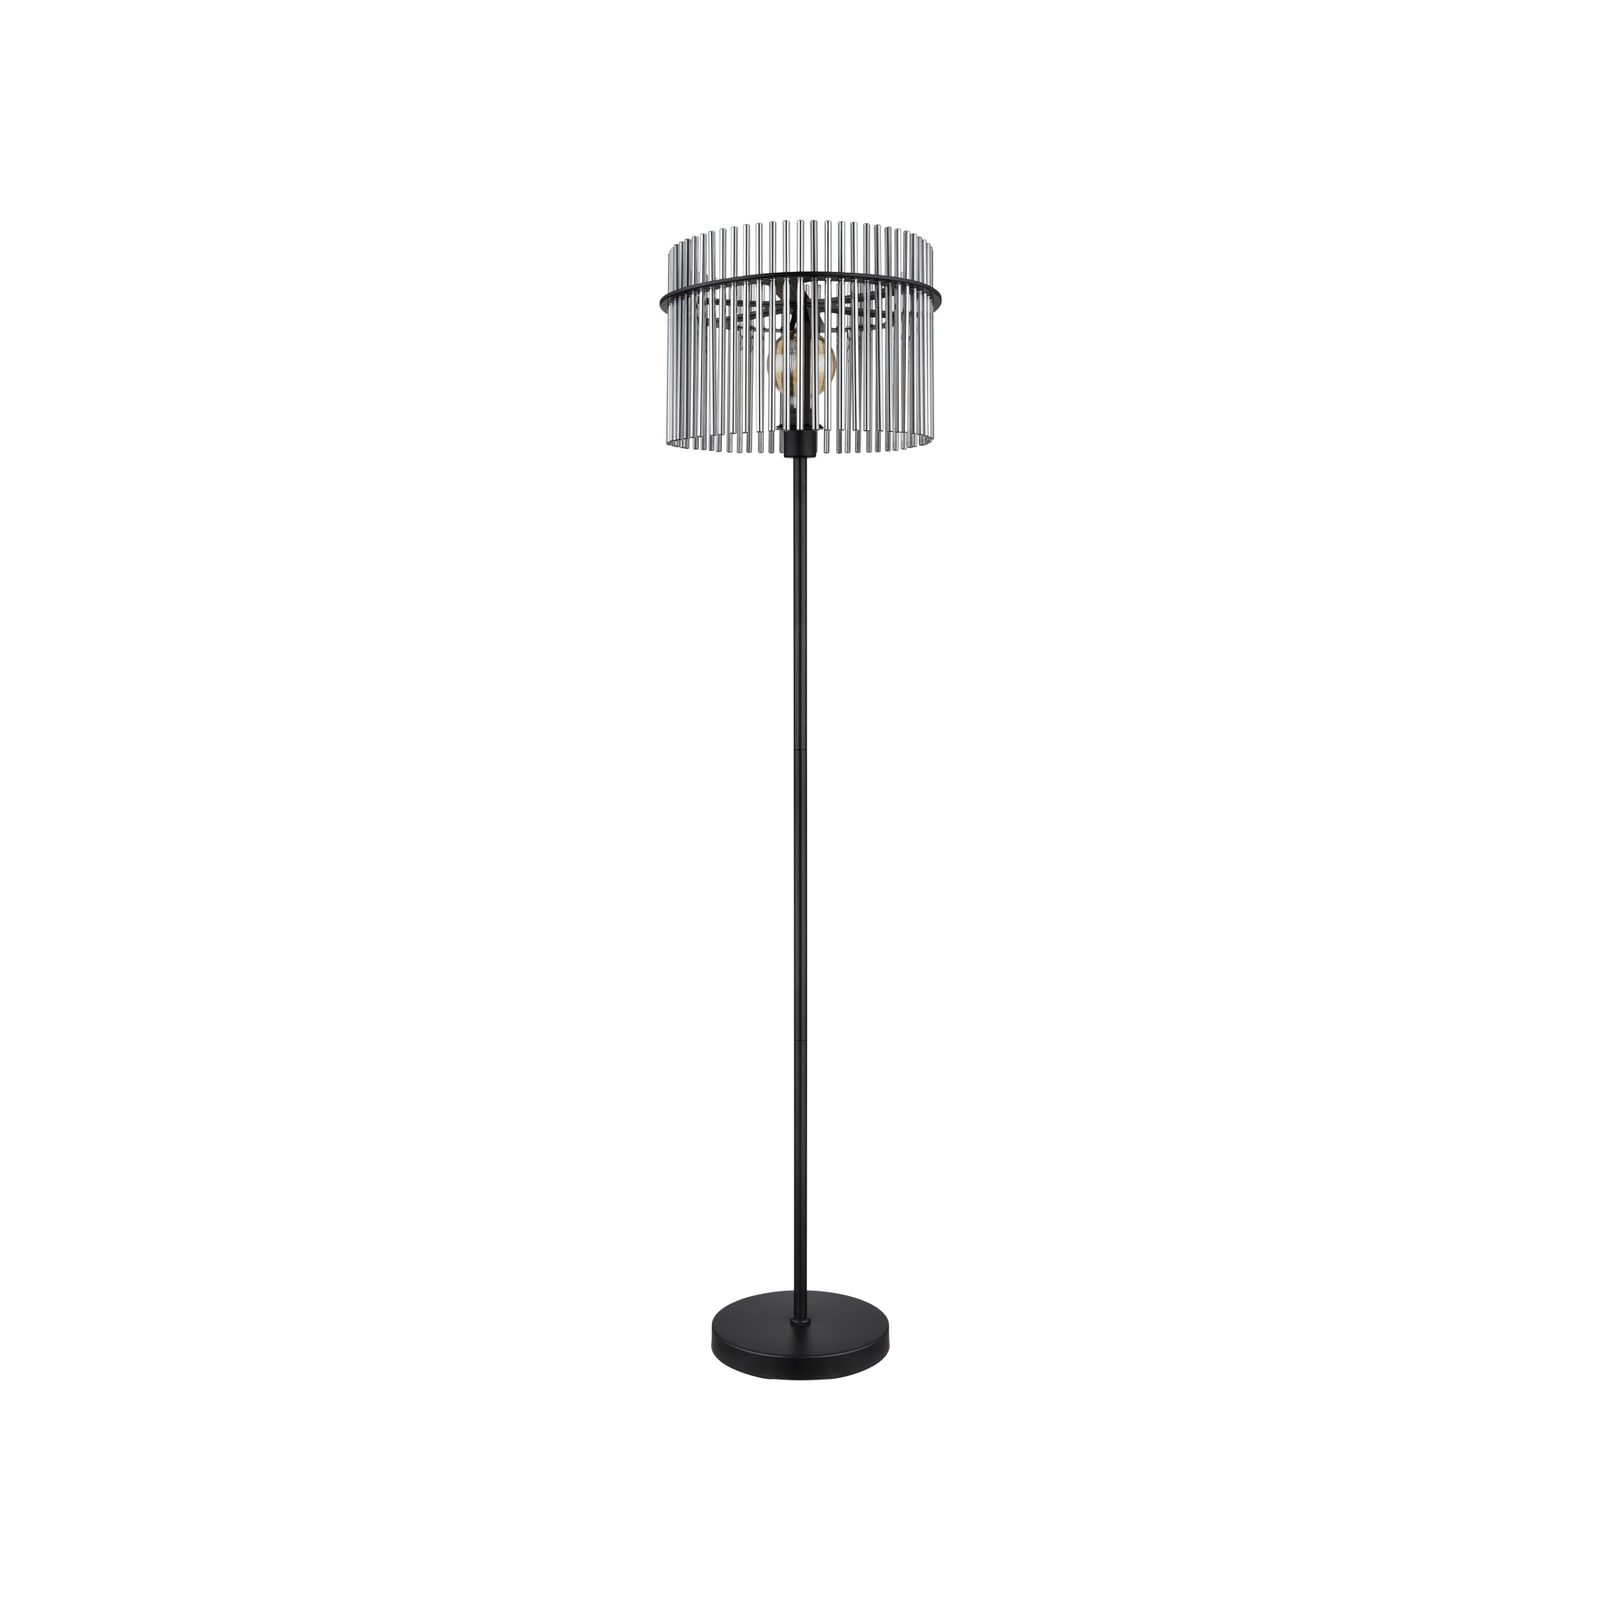 Gorley állólámpa, magasság 152 cm, füstszürke, üveg/fém